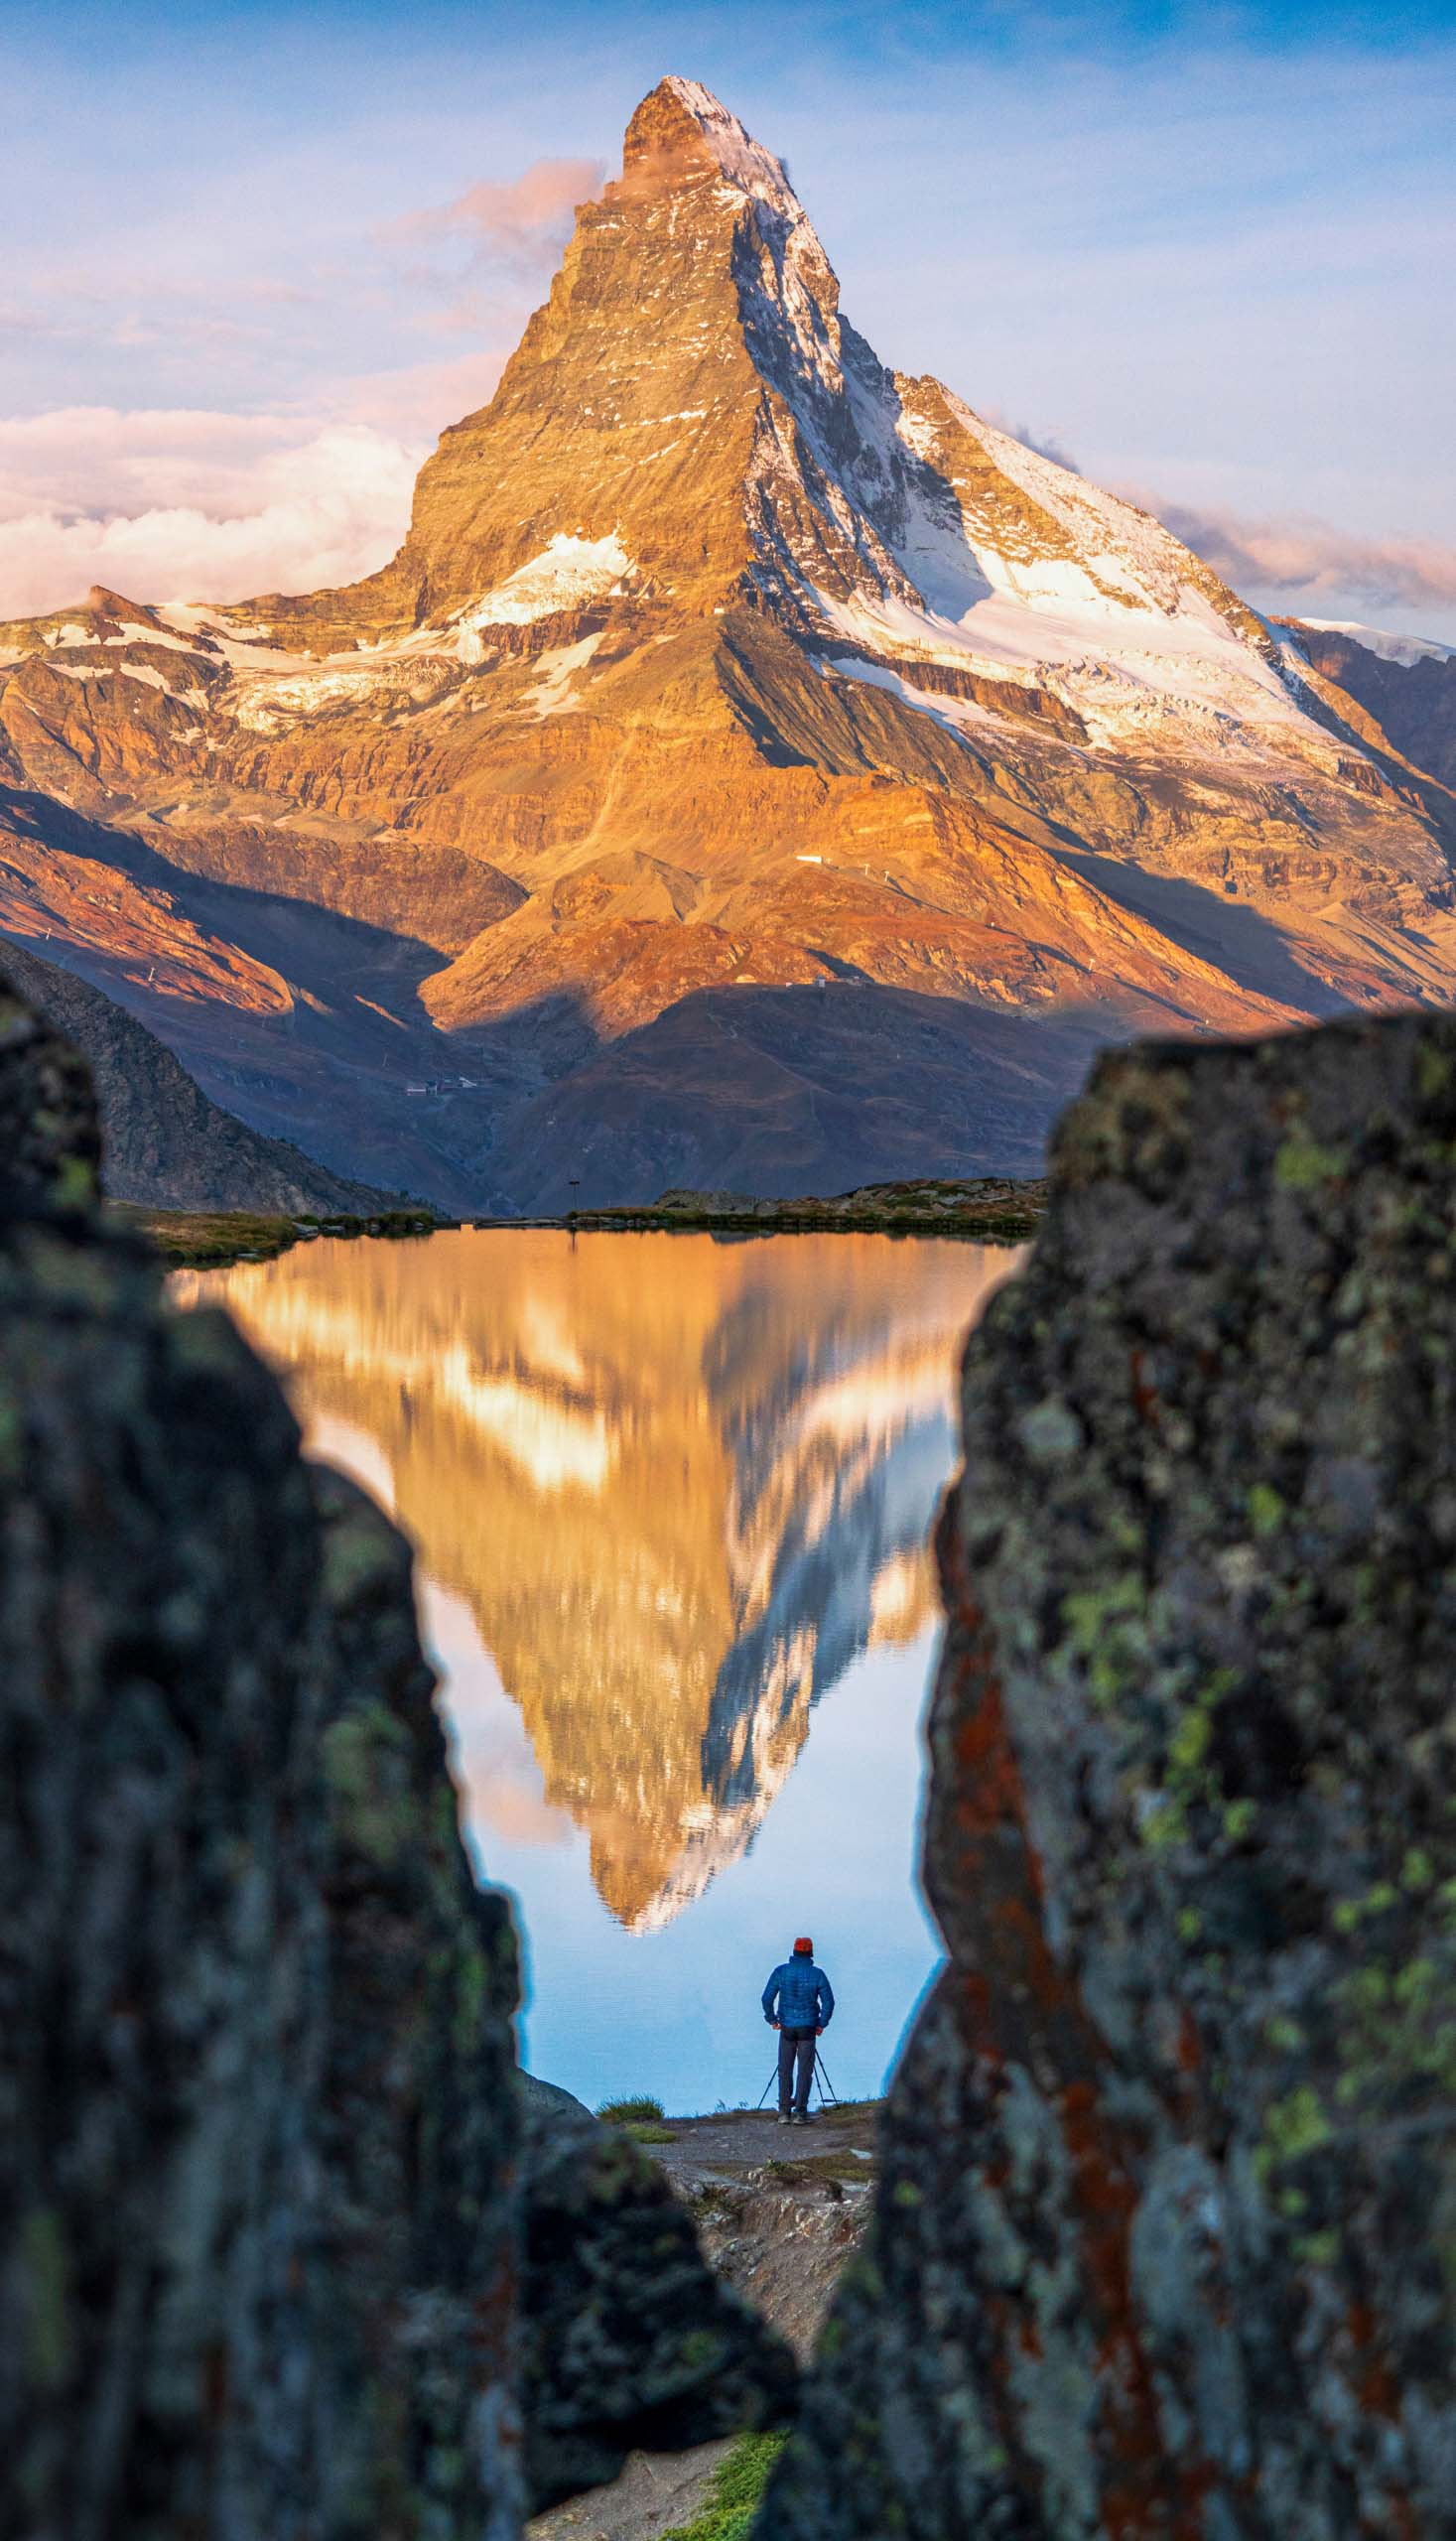 Man photographing Matterhorn from lake Stellisee at dawn.